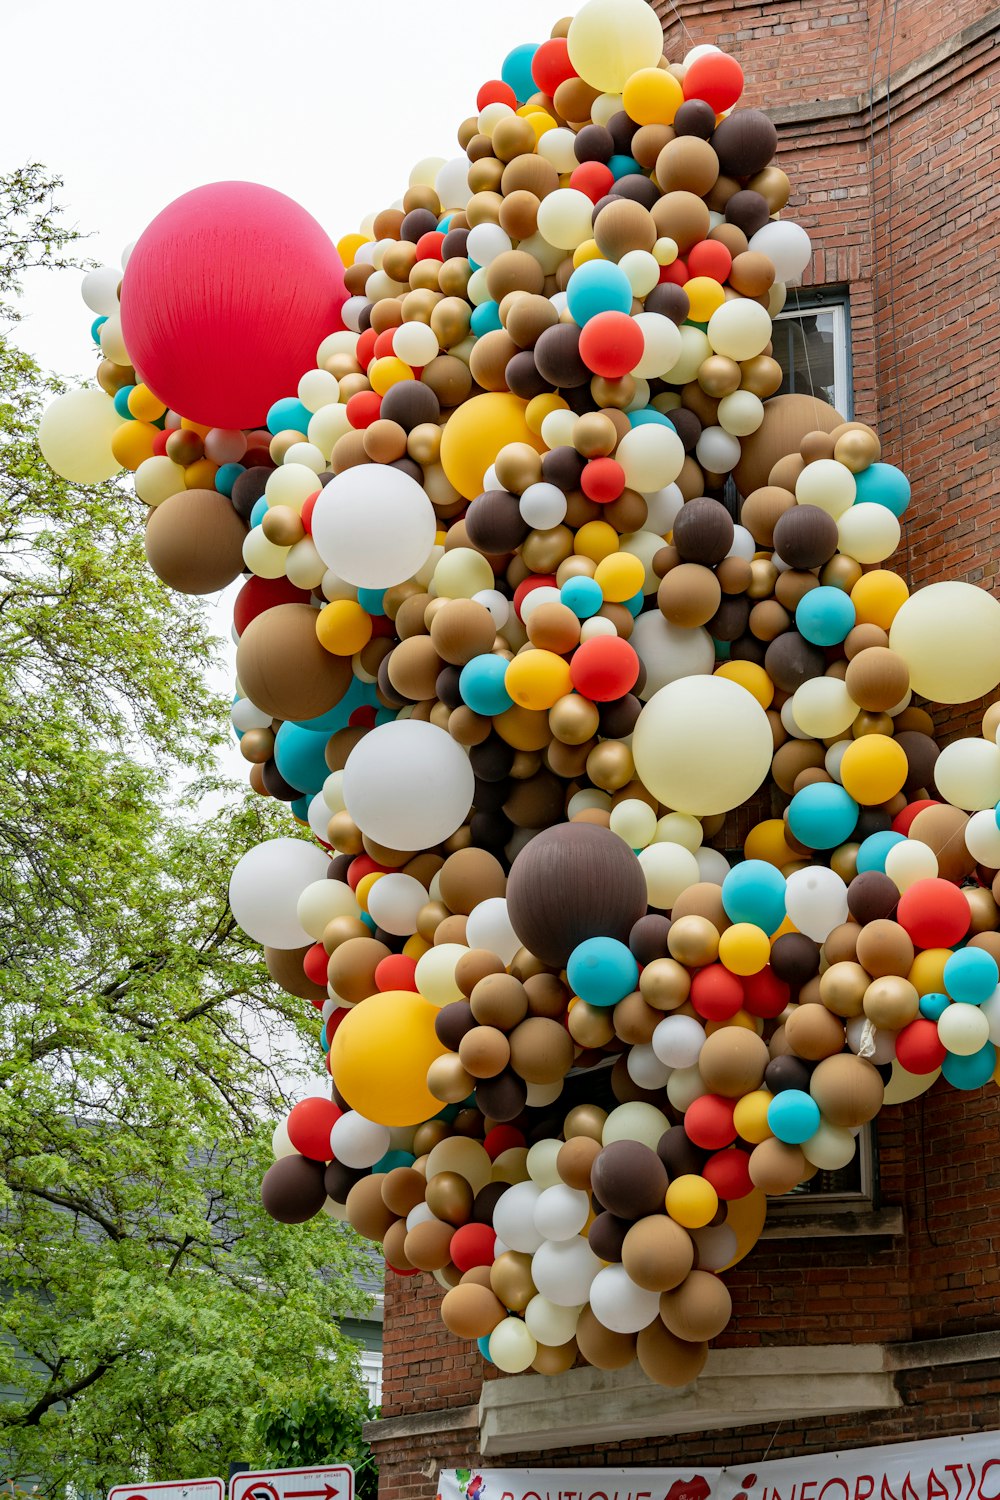 Lote de globos en un edificio marrón cerca de un árbol durante el día